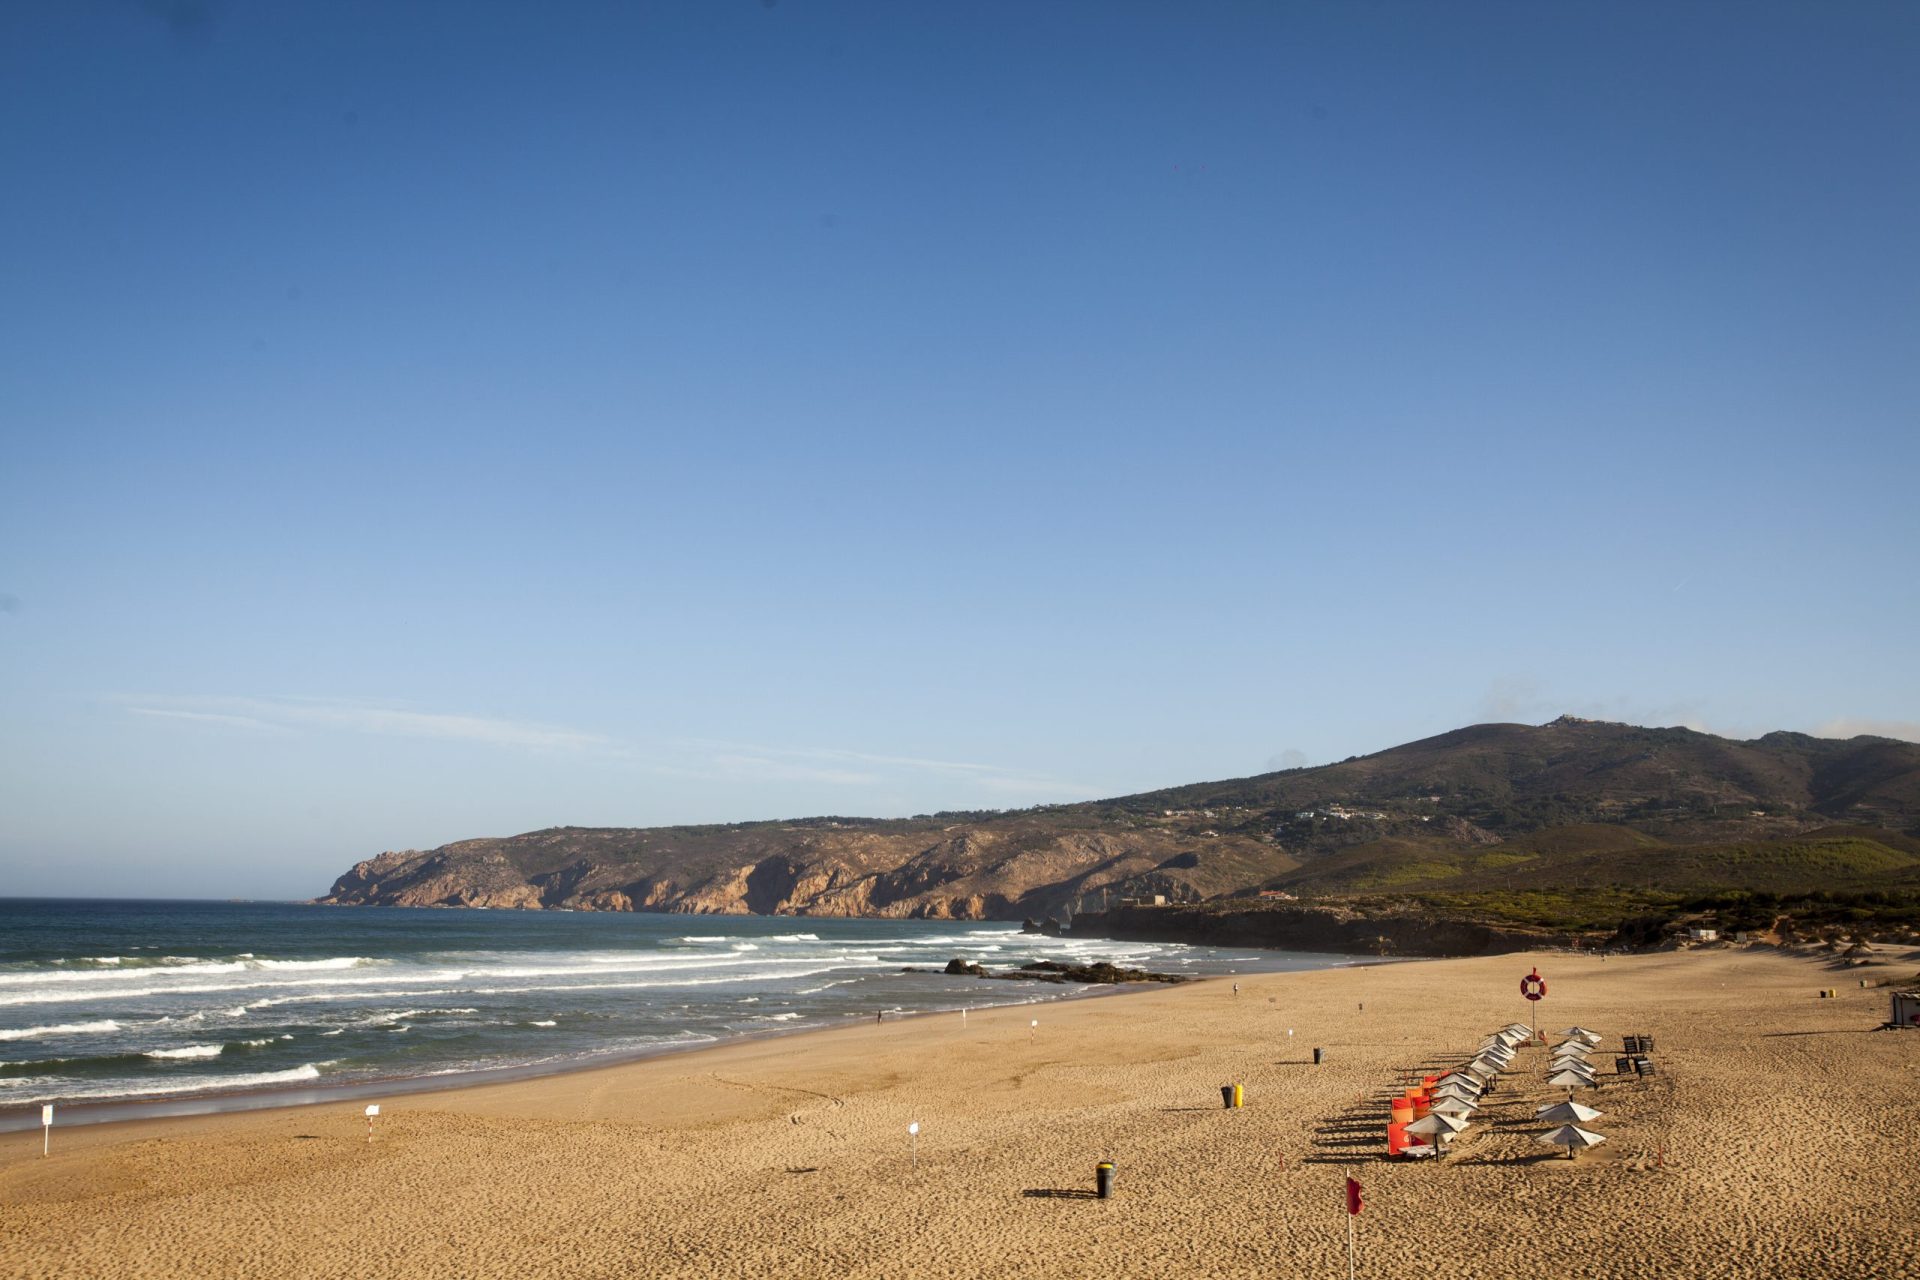 Praticante de kitesurf morre junto à praia do Guincho em Cascais